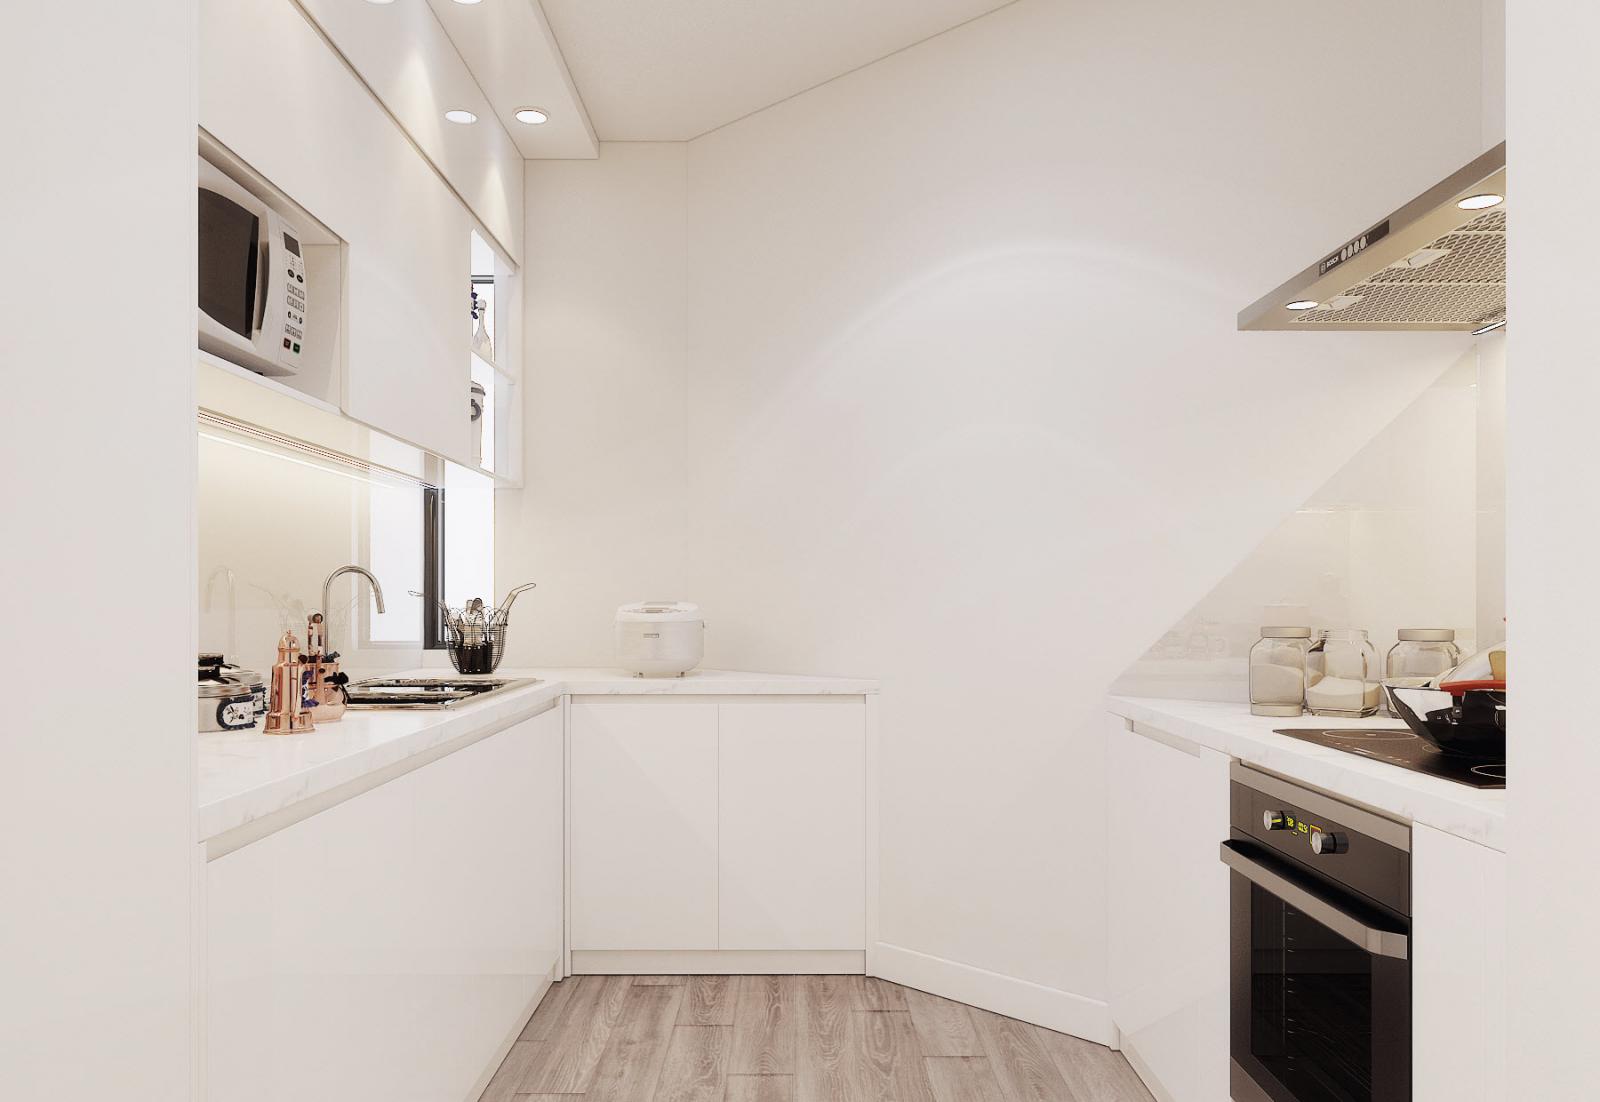 Kiến trúc sư khéo léo sử dụng bảng màu trắng tinh khôi cho phòng bếp, nhằm tạo cảm giác rộng rãi hơn một cách trực quan.